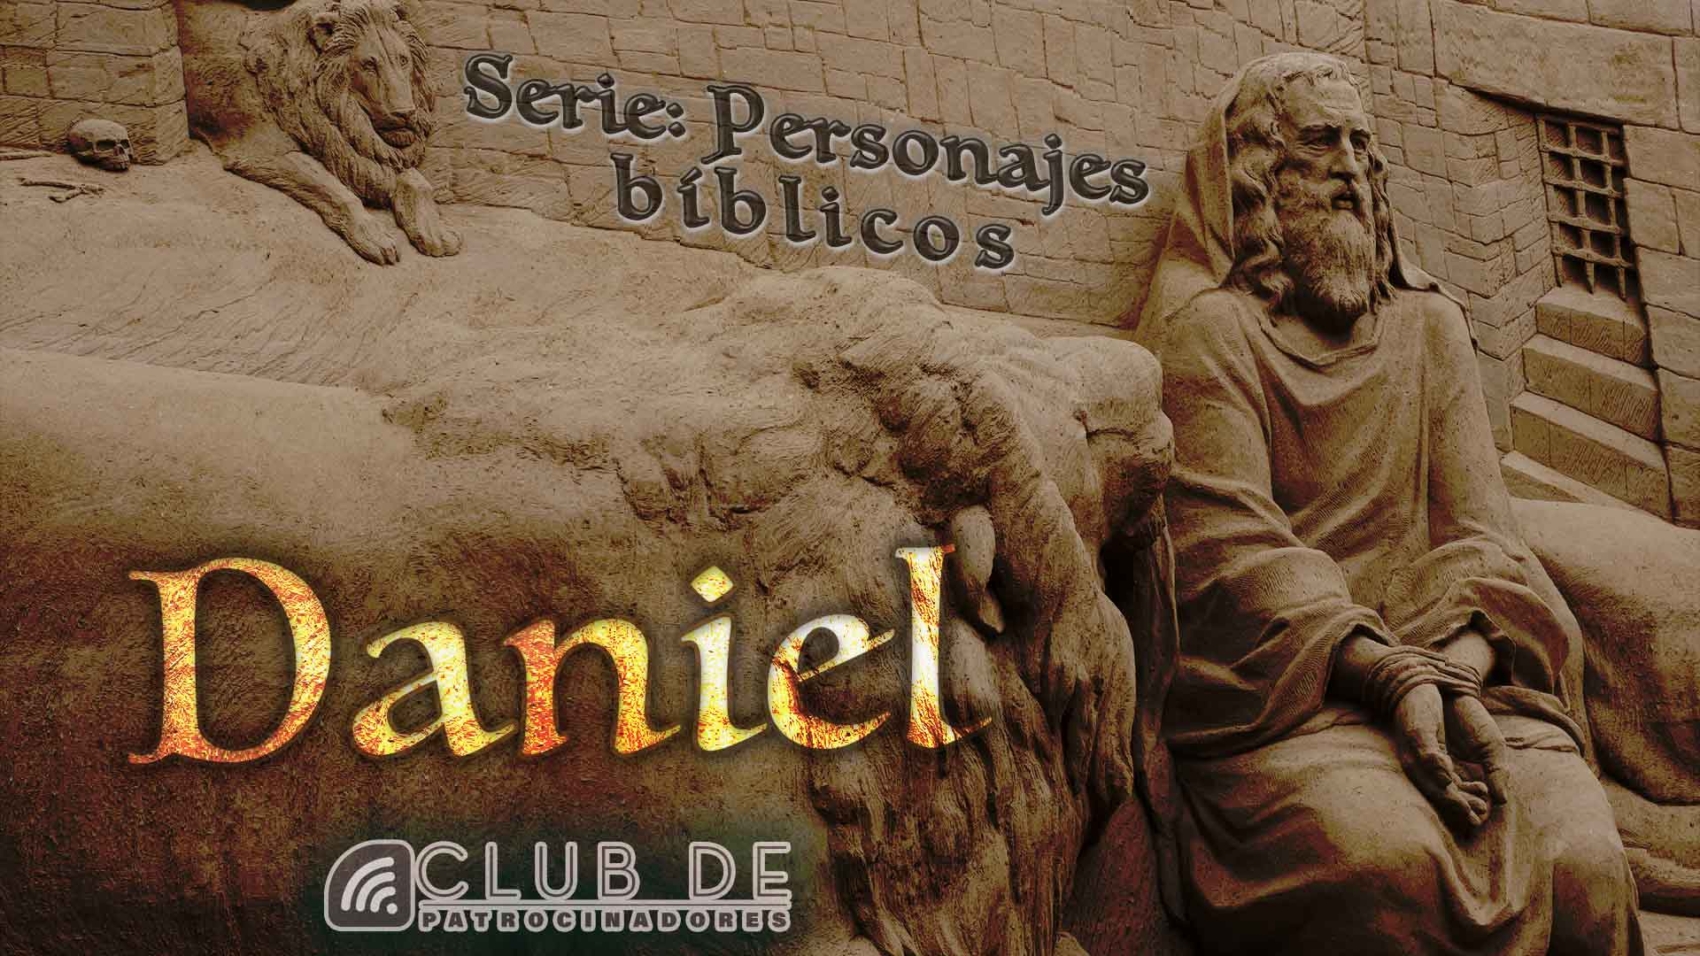 CP_66 -personaje biblico- Daniel 1920x1080